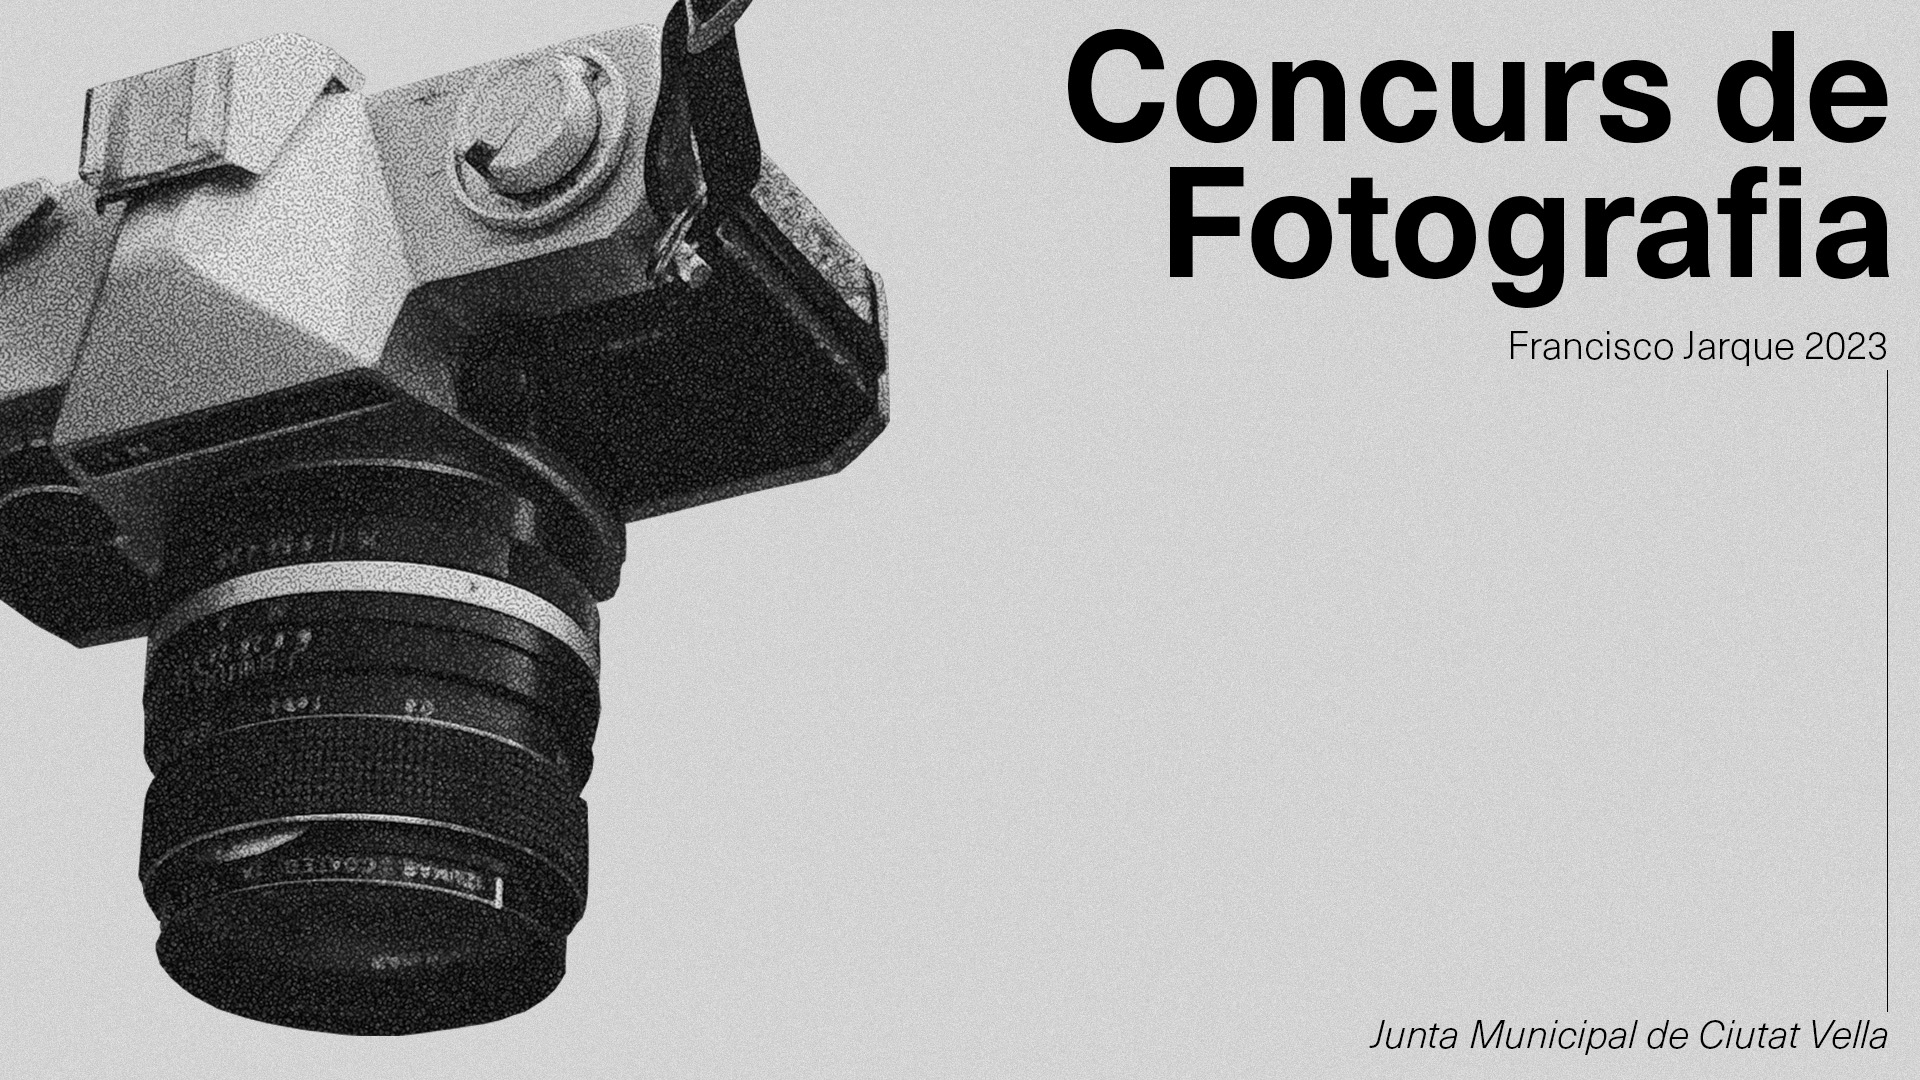 Concurs de Fotografia Paco Jarque 2023. Junta Municipal de Ciutat Vella